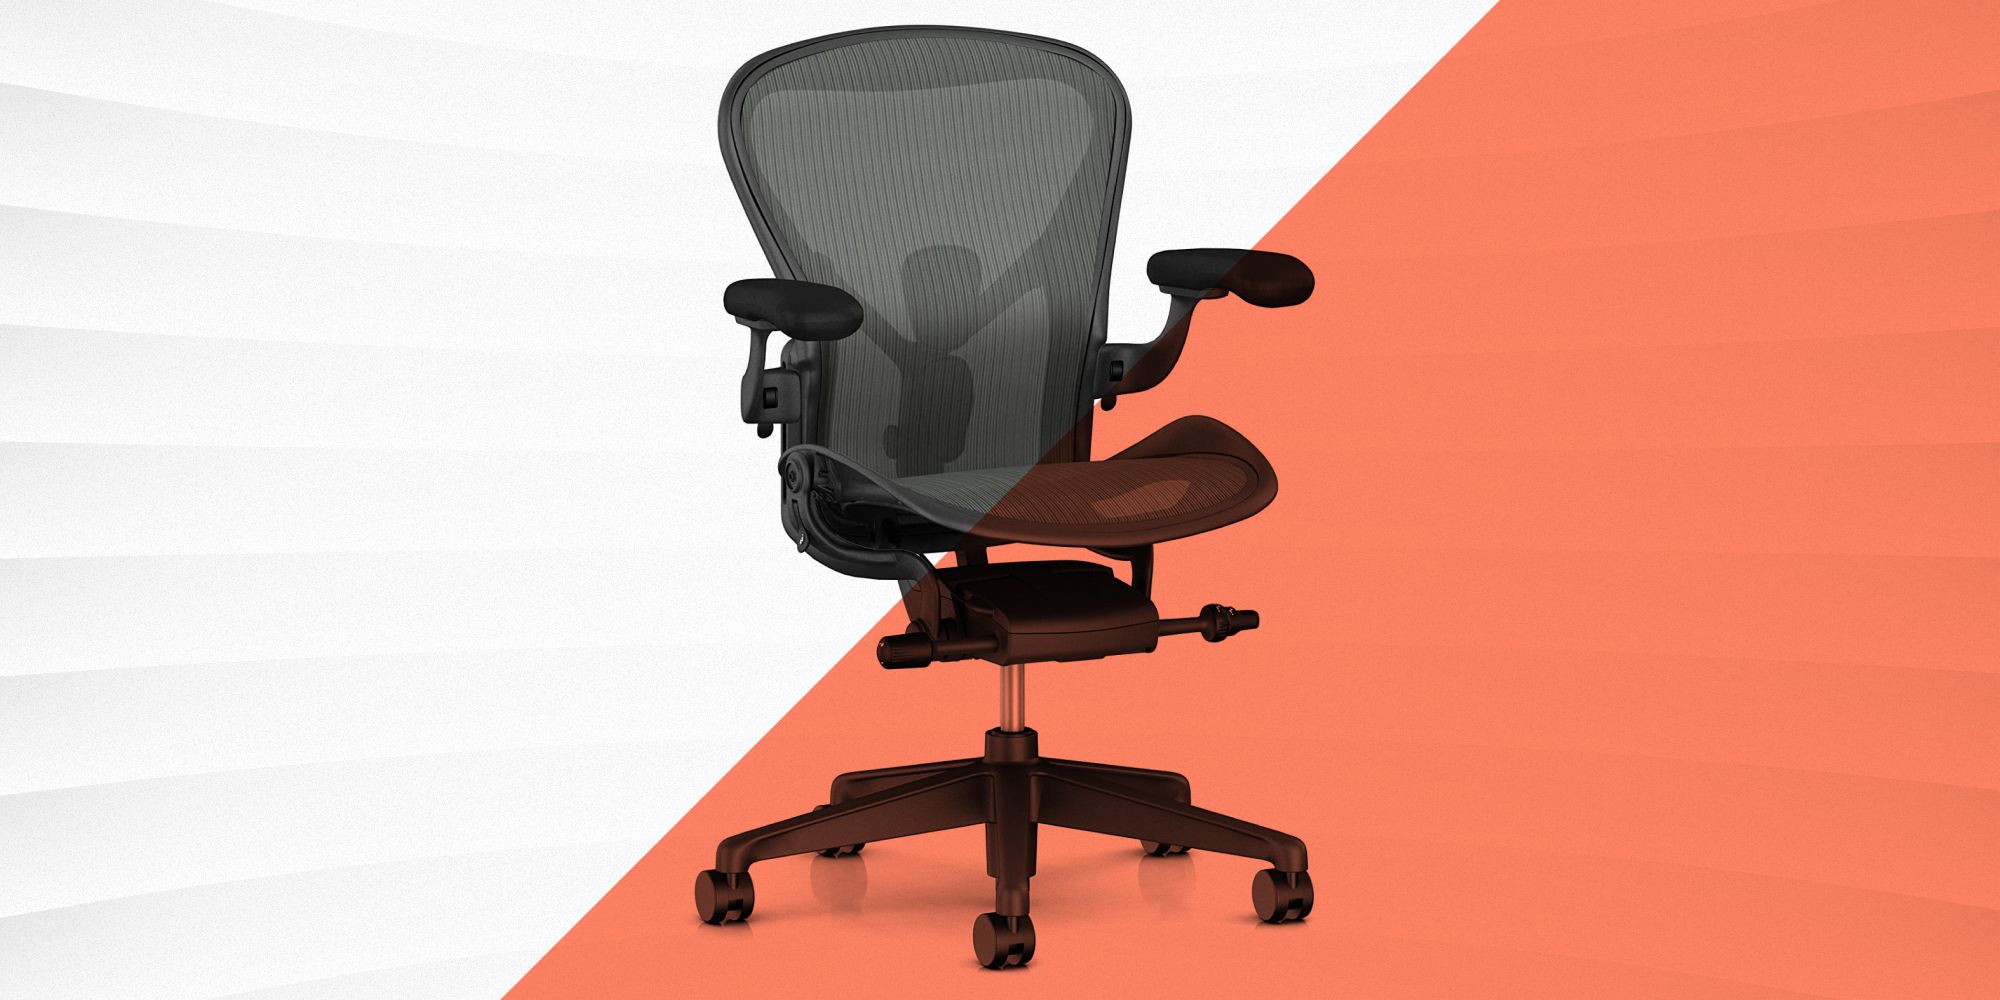 Ghế ergonomic office chair dùng trong văn phòng